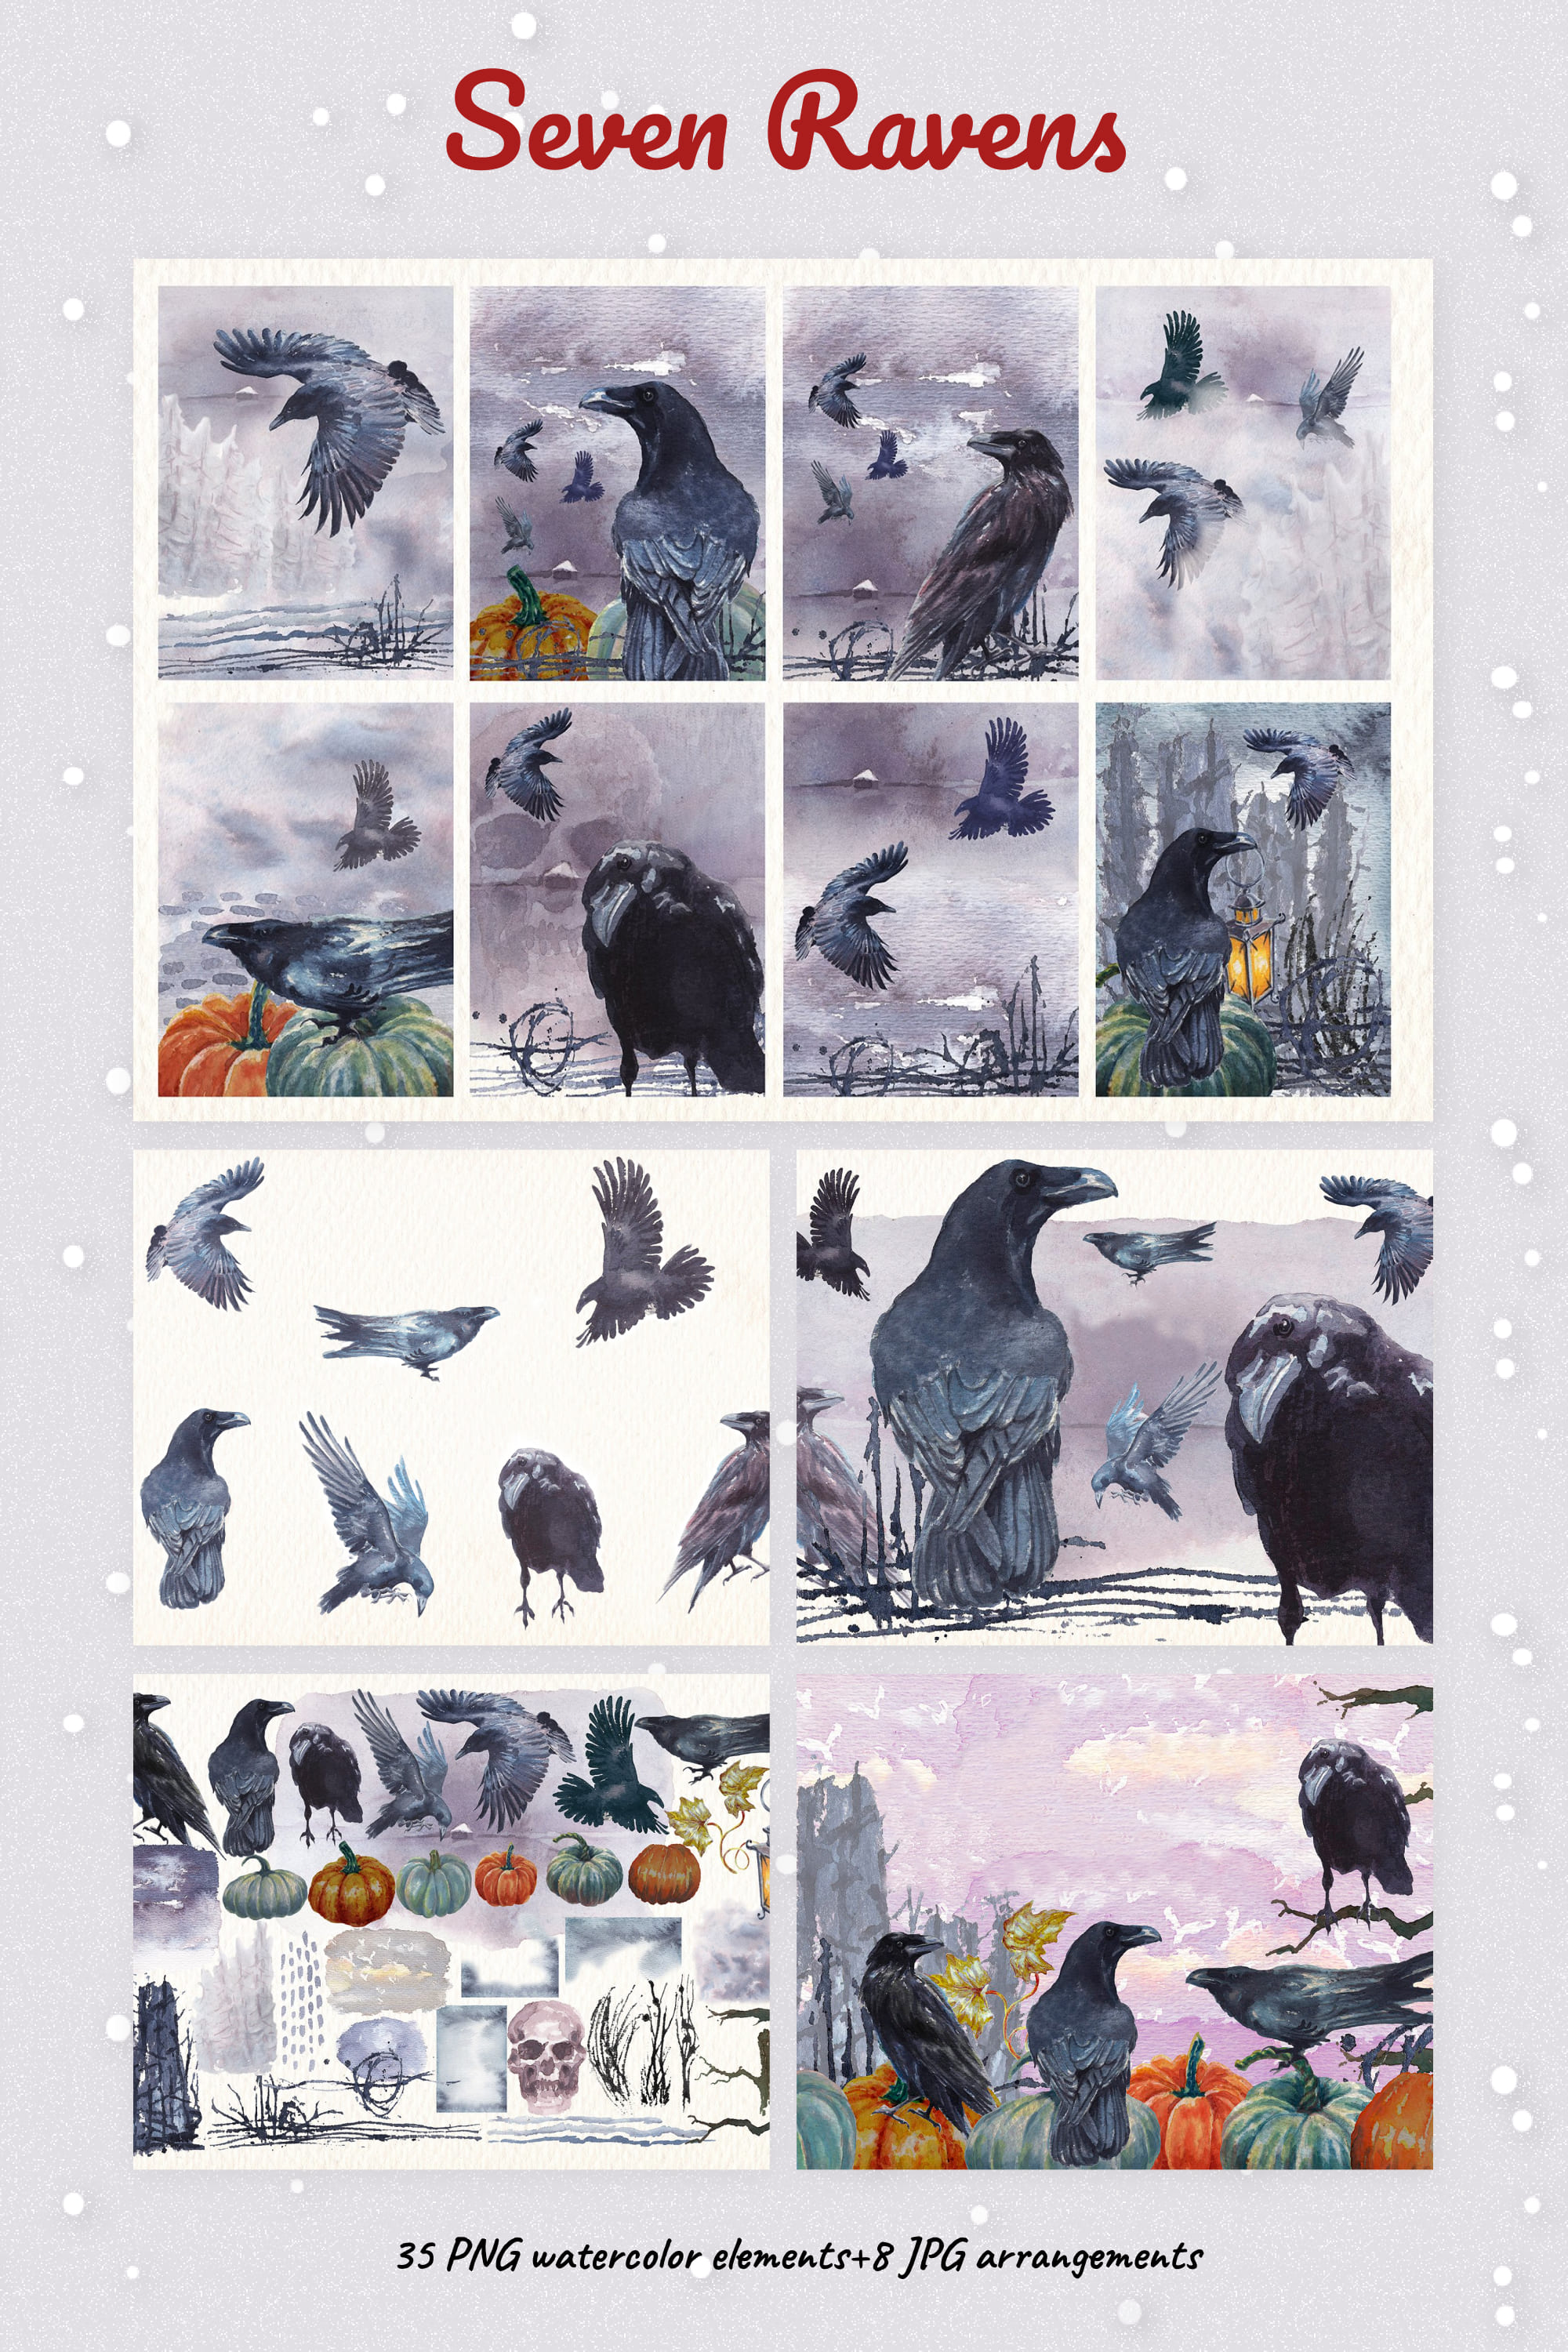 Seven ravens watercolor clipart - pinterest image preview.